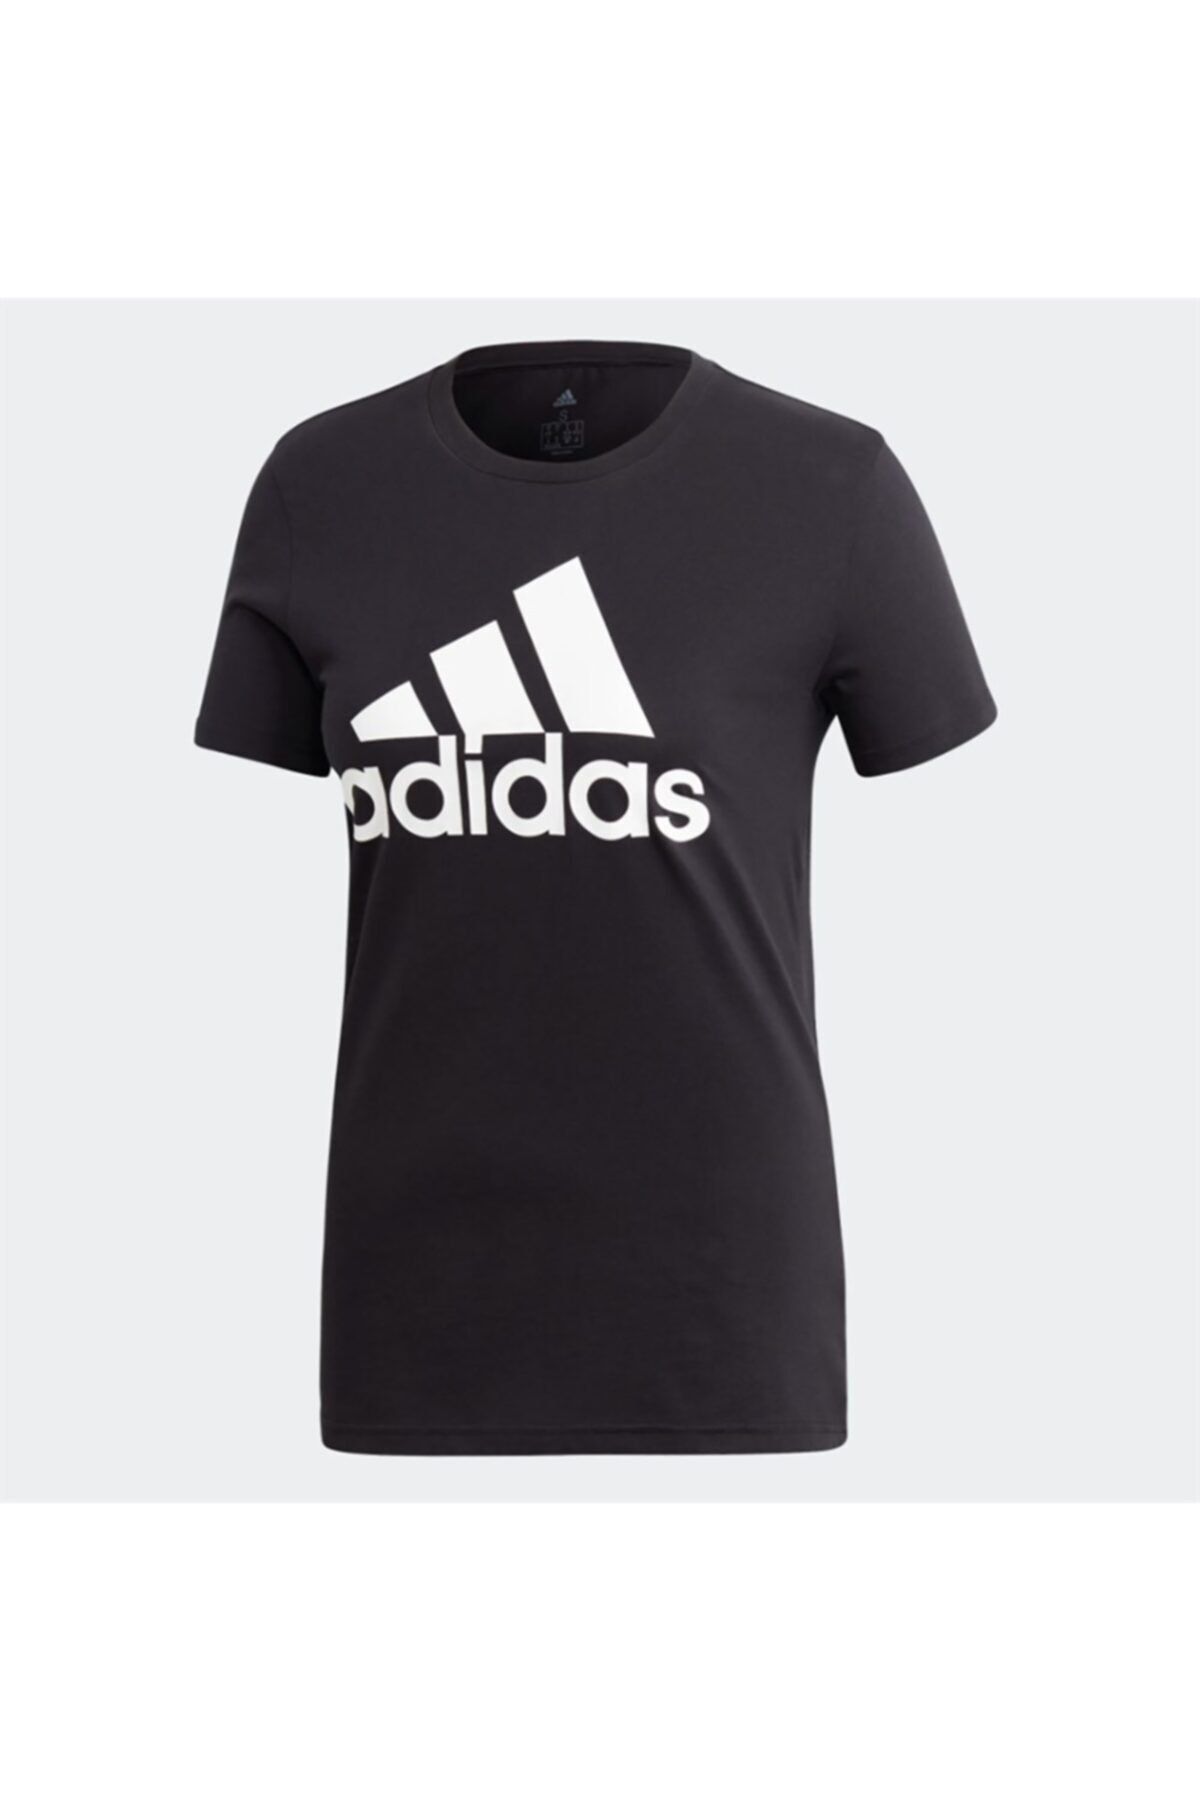 adidas W BOS CO Siyah Kadın T-Shirt 101085771